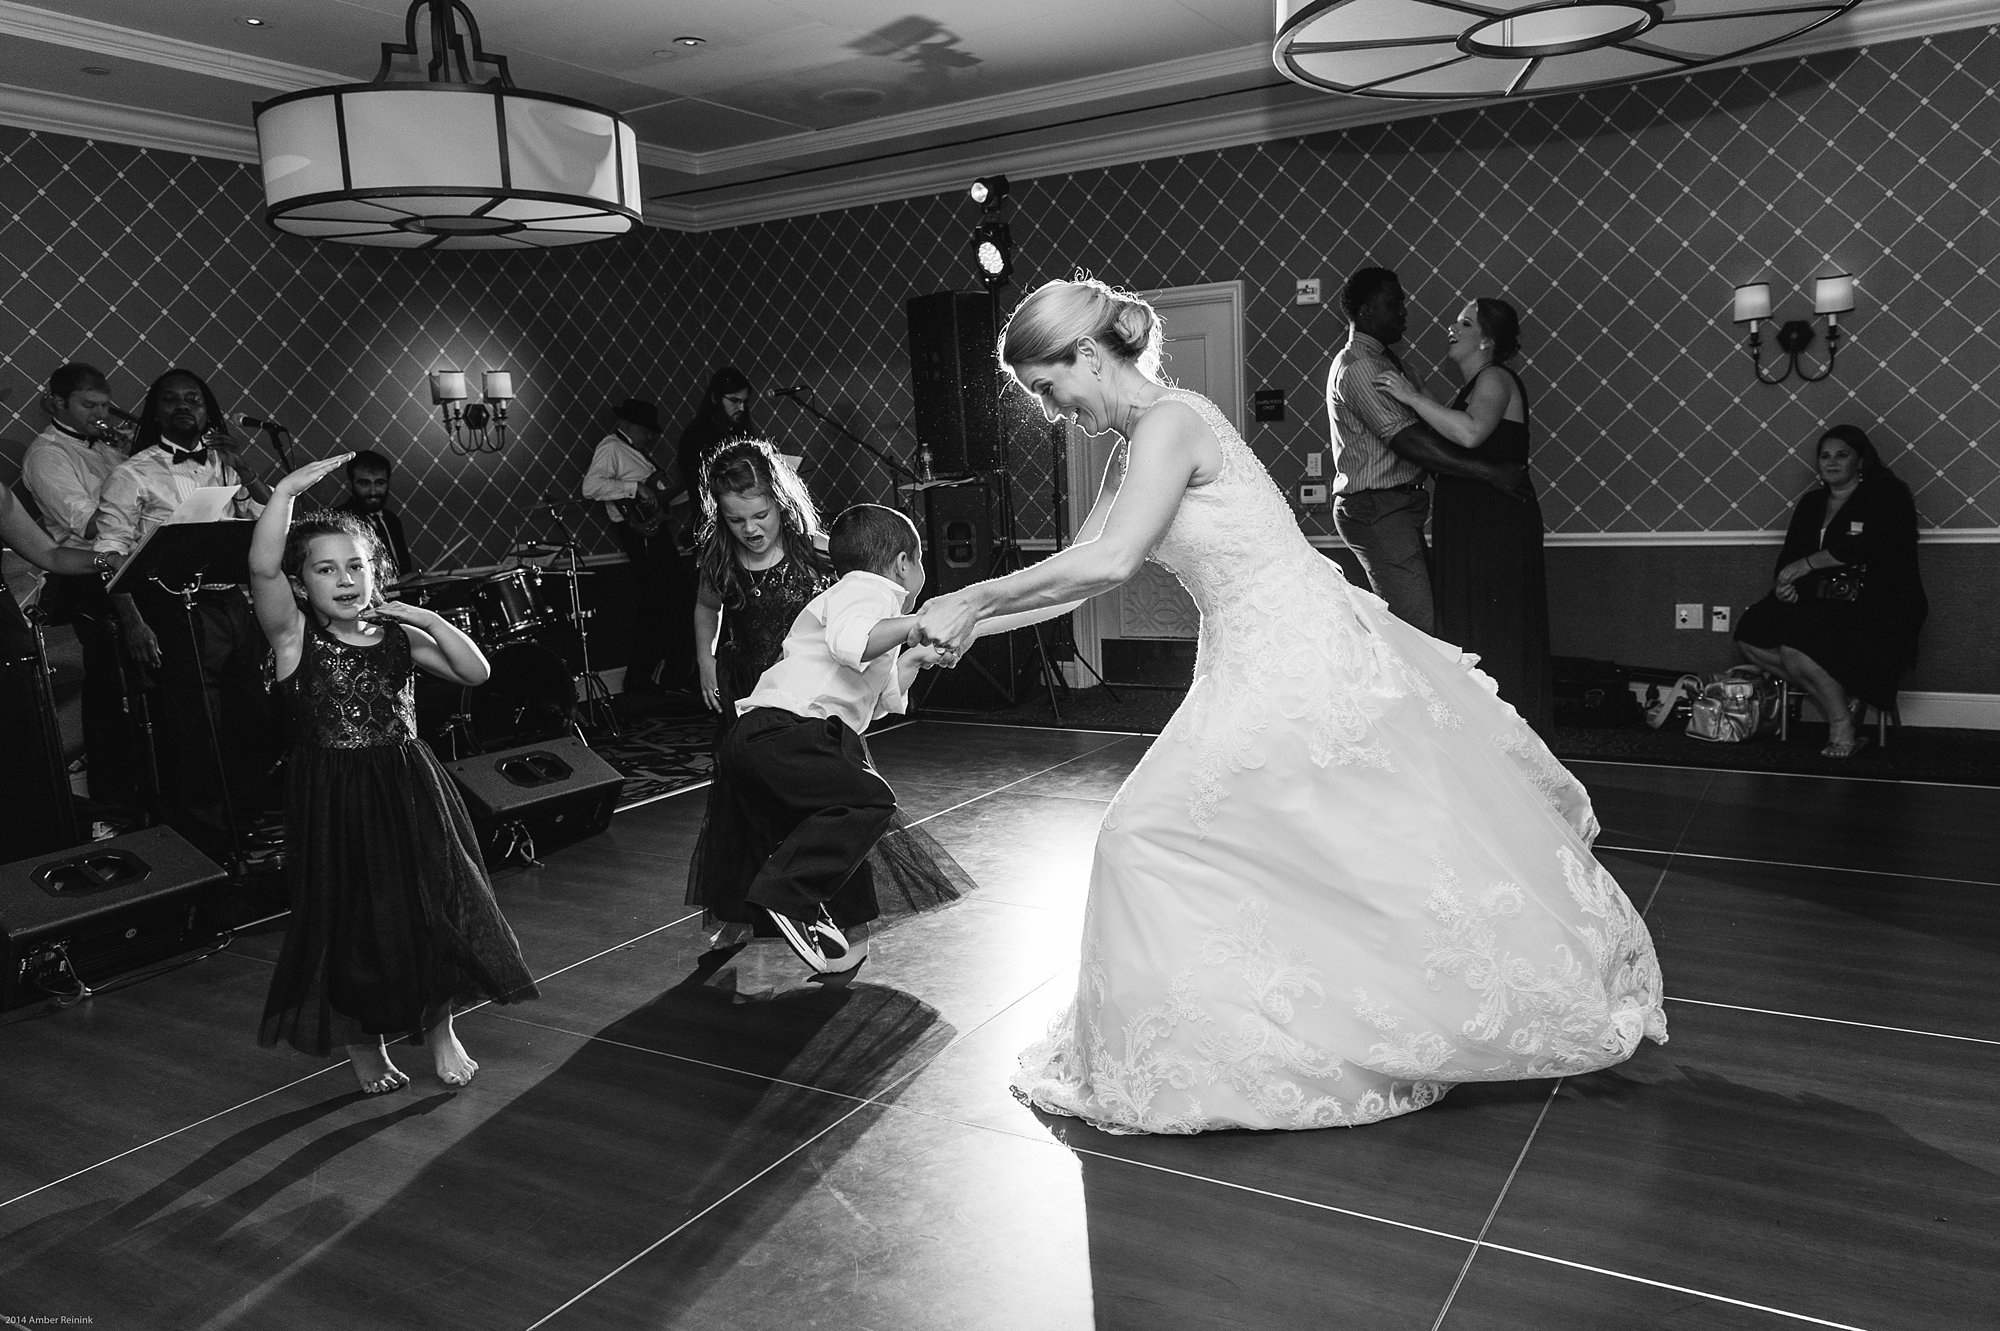 alexandrian hotel wedding pictures dancing